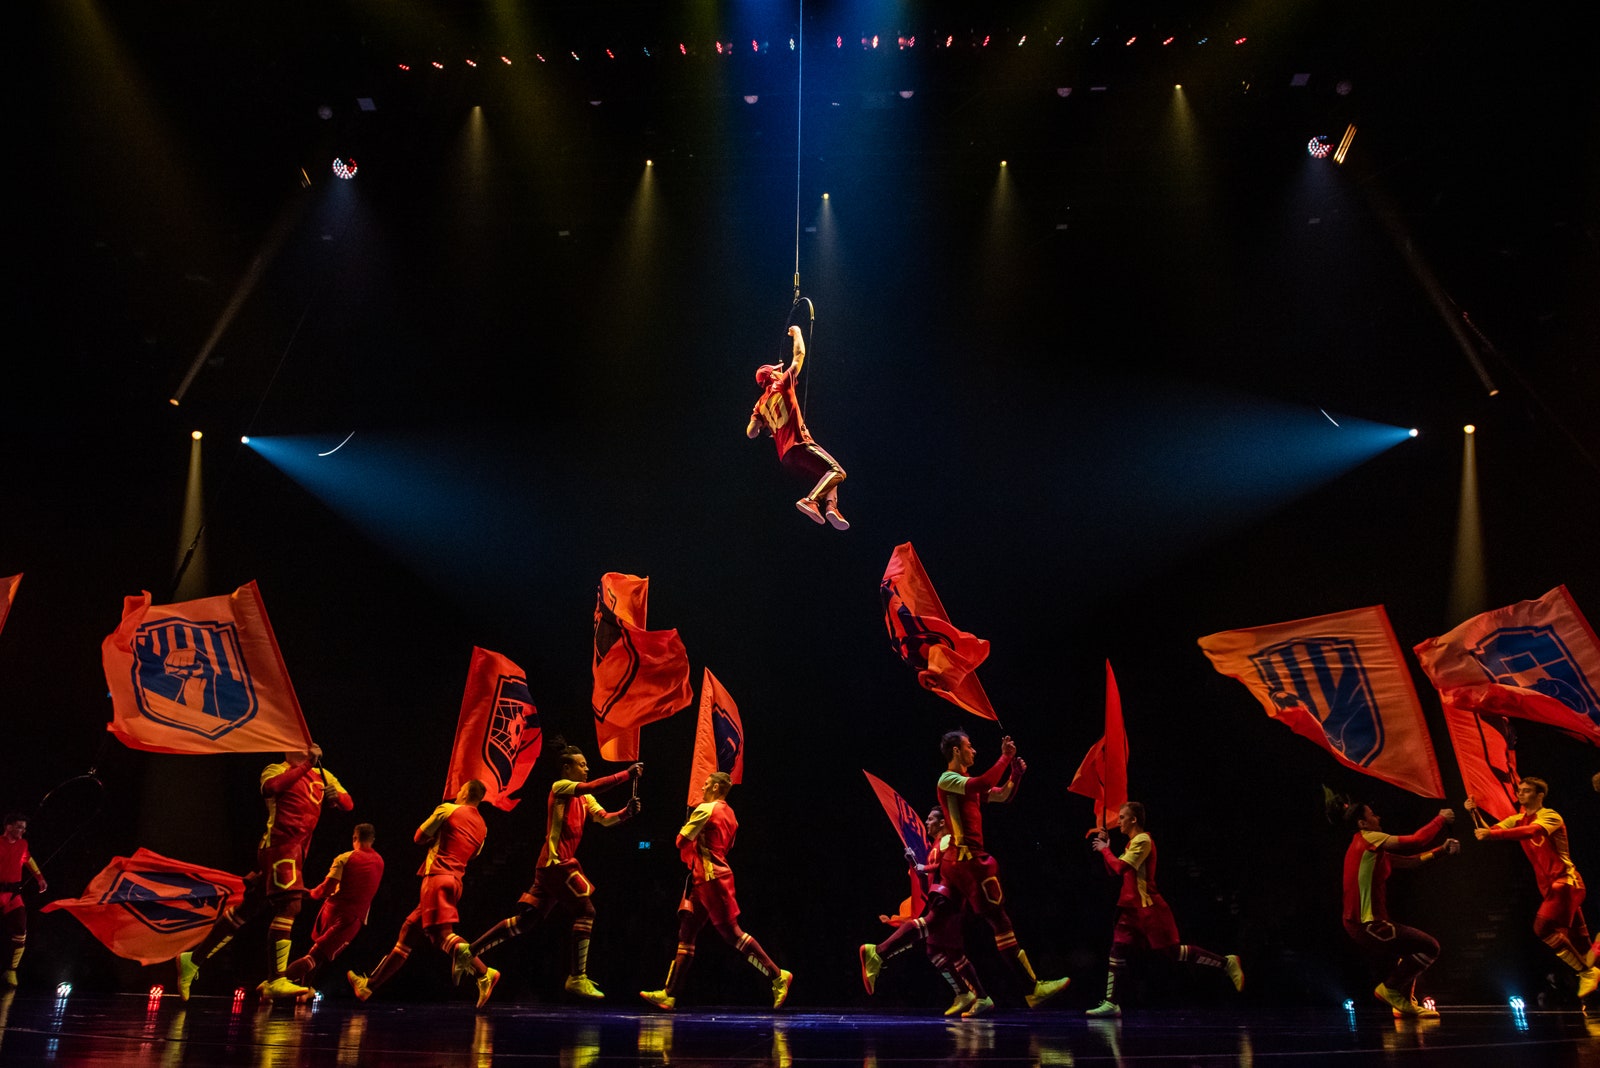 Viber запустил сообщество и стикерпак шоу Messi10 от Cirque du Soleil посвященного Месси